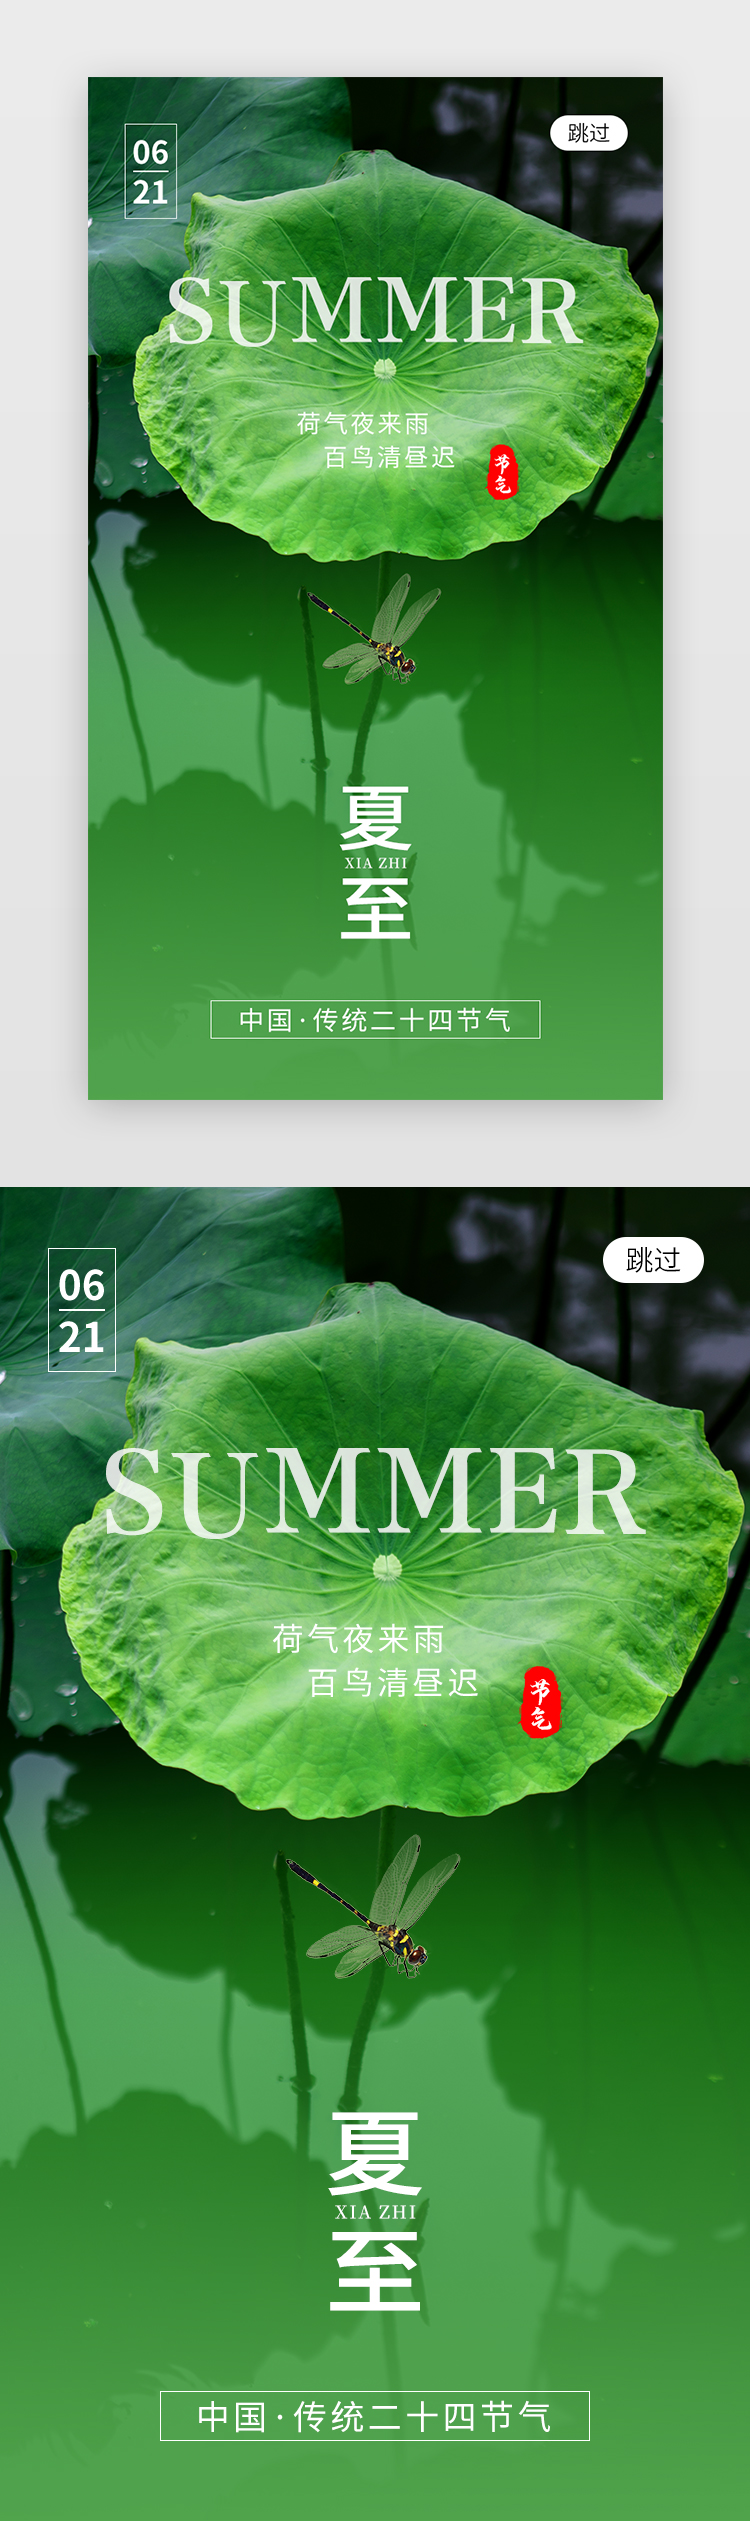 二十四节气夏至app闪屏创意绿色莲花图片